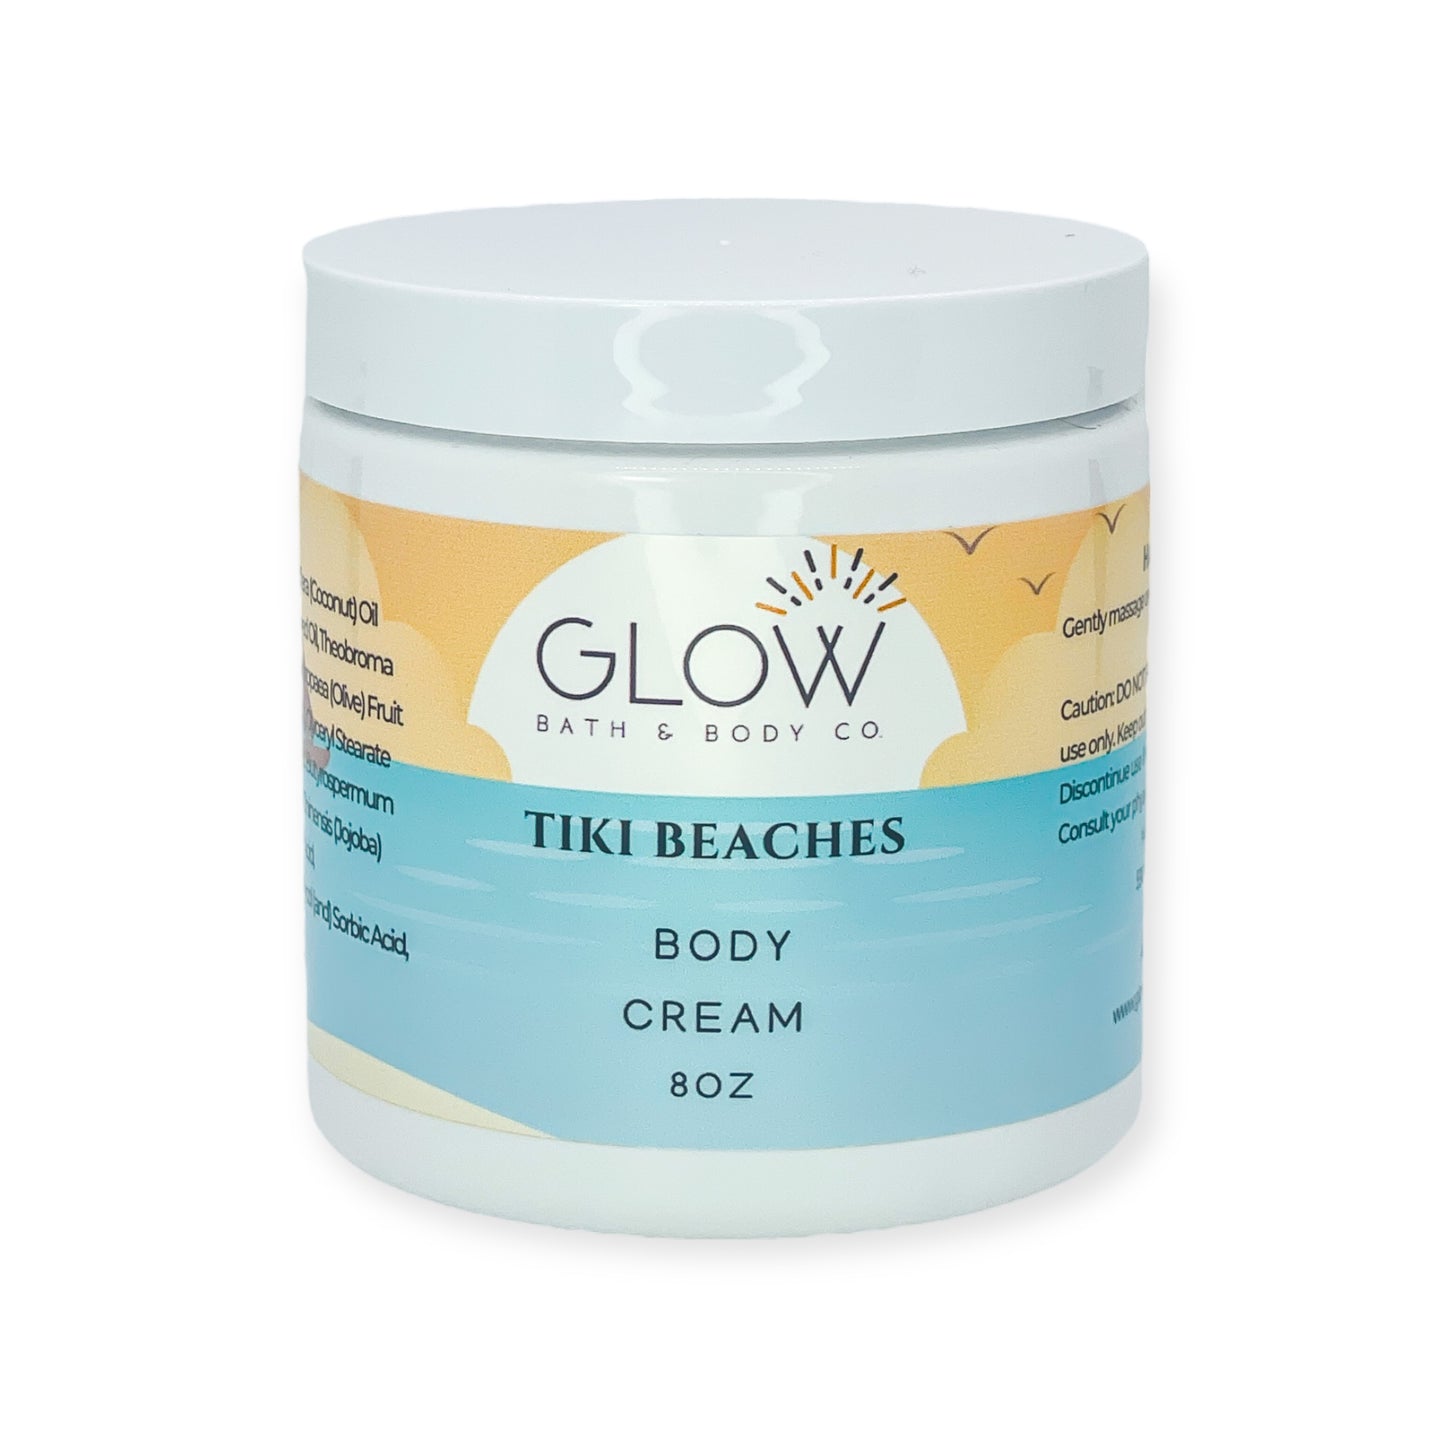 Tiki Beaches Body Cream